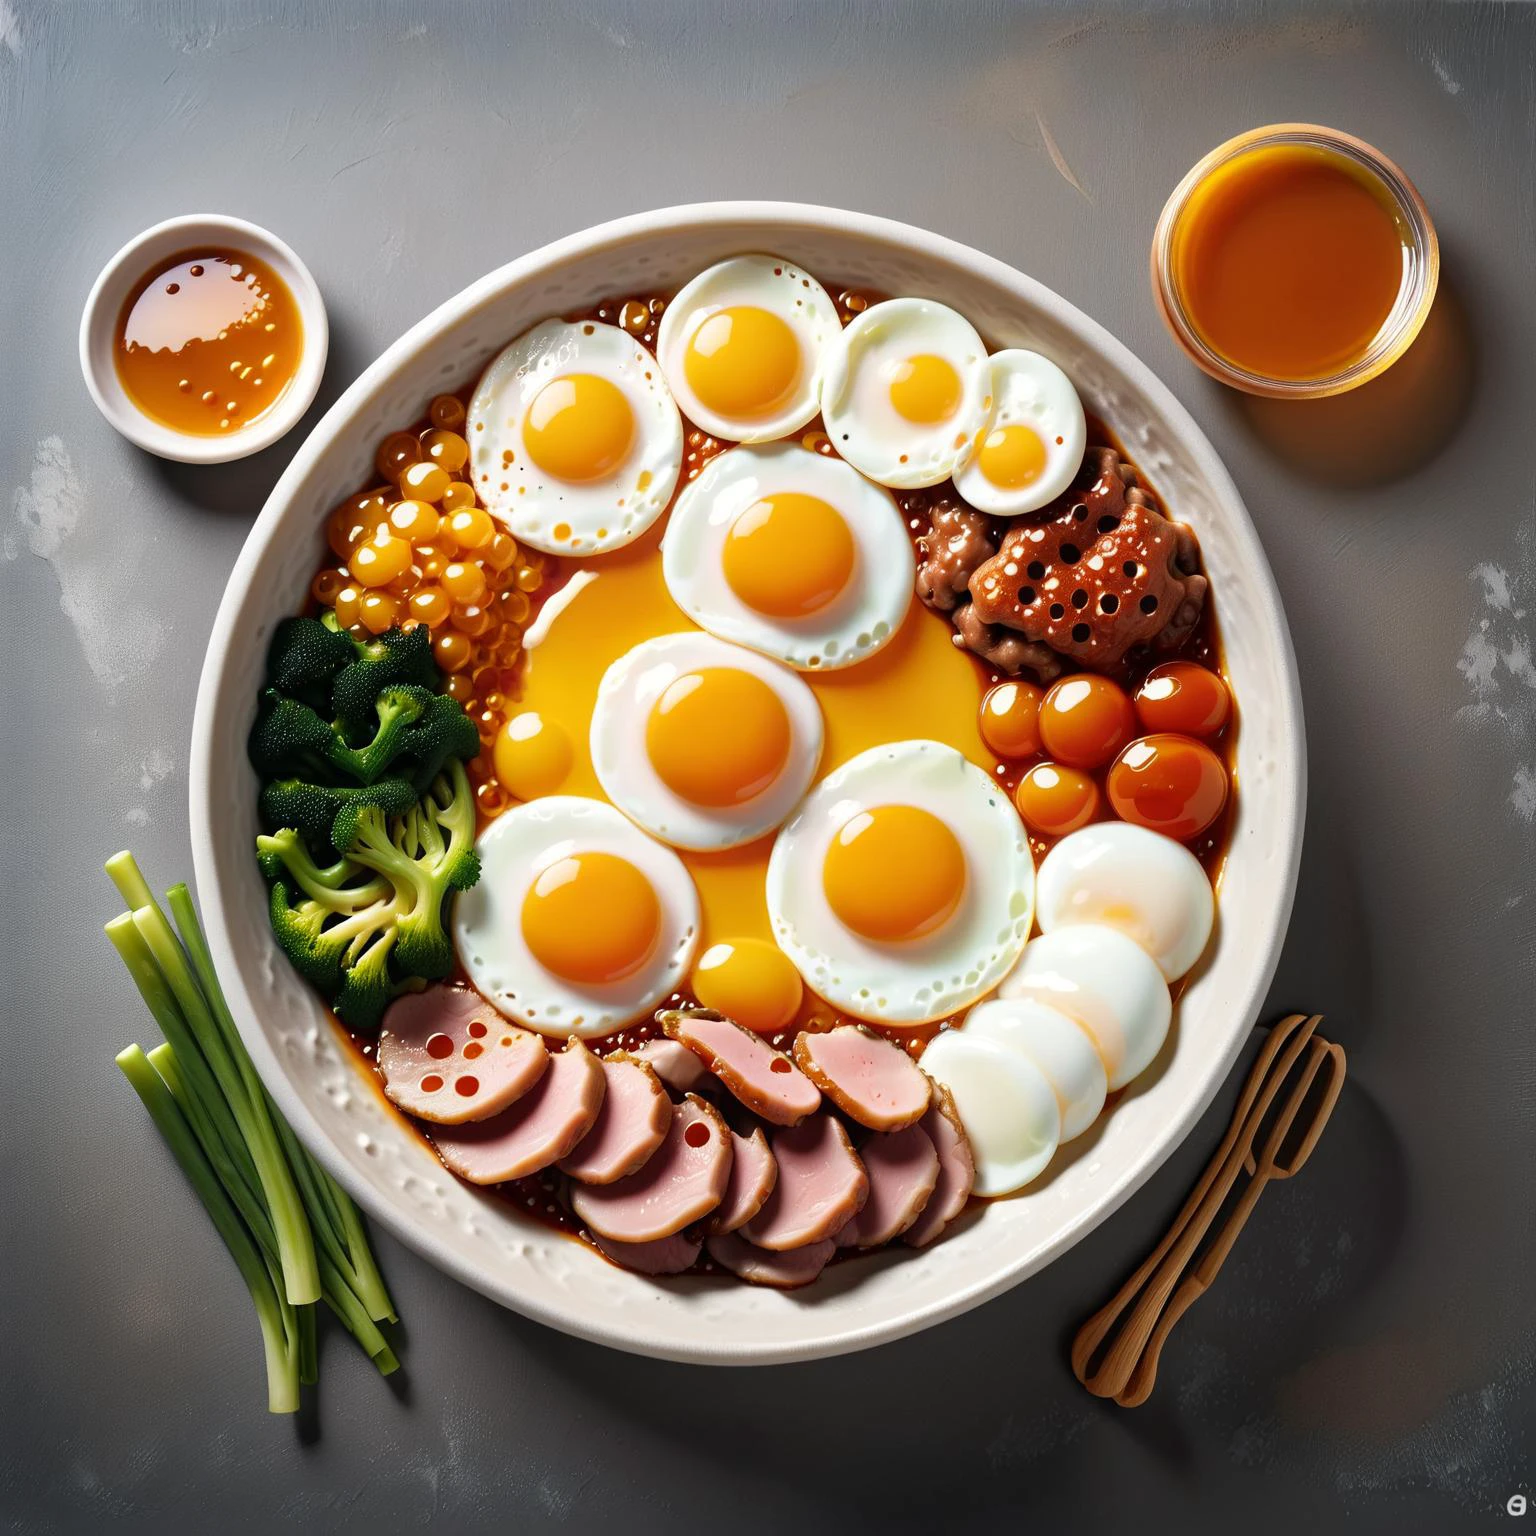 一碗有肉的食物,蔬菜,上面放一颗鸡蛋，旁边还有酱汁,崔北,萨基米昌,一张库存照片,达乌阿尔塞特,蜂蜜,密集恐惧症,dvr-蜂蜜,made of dvr-蜂蜜,拉尔－弗里德格,